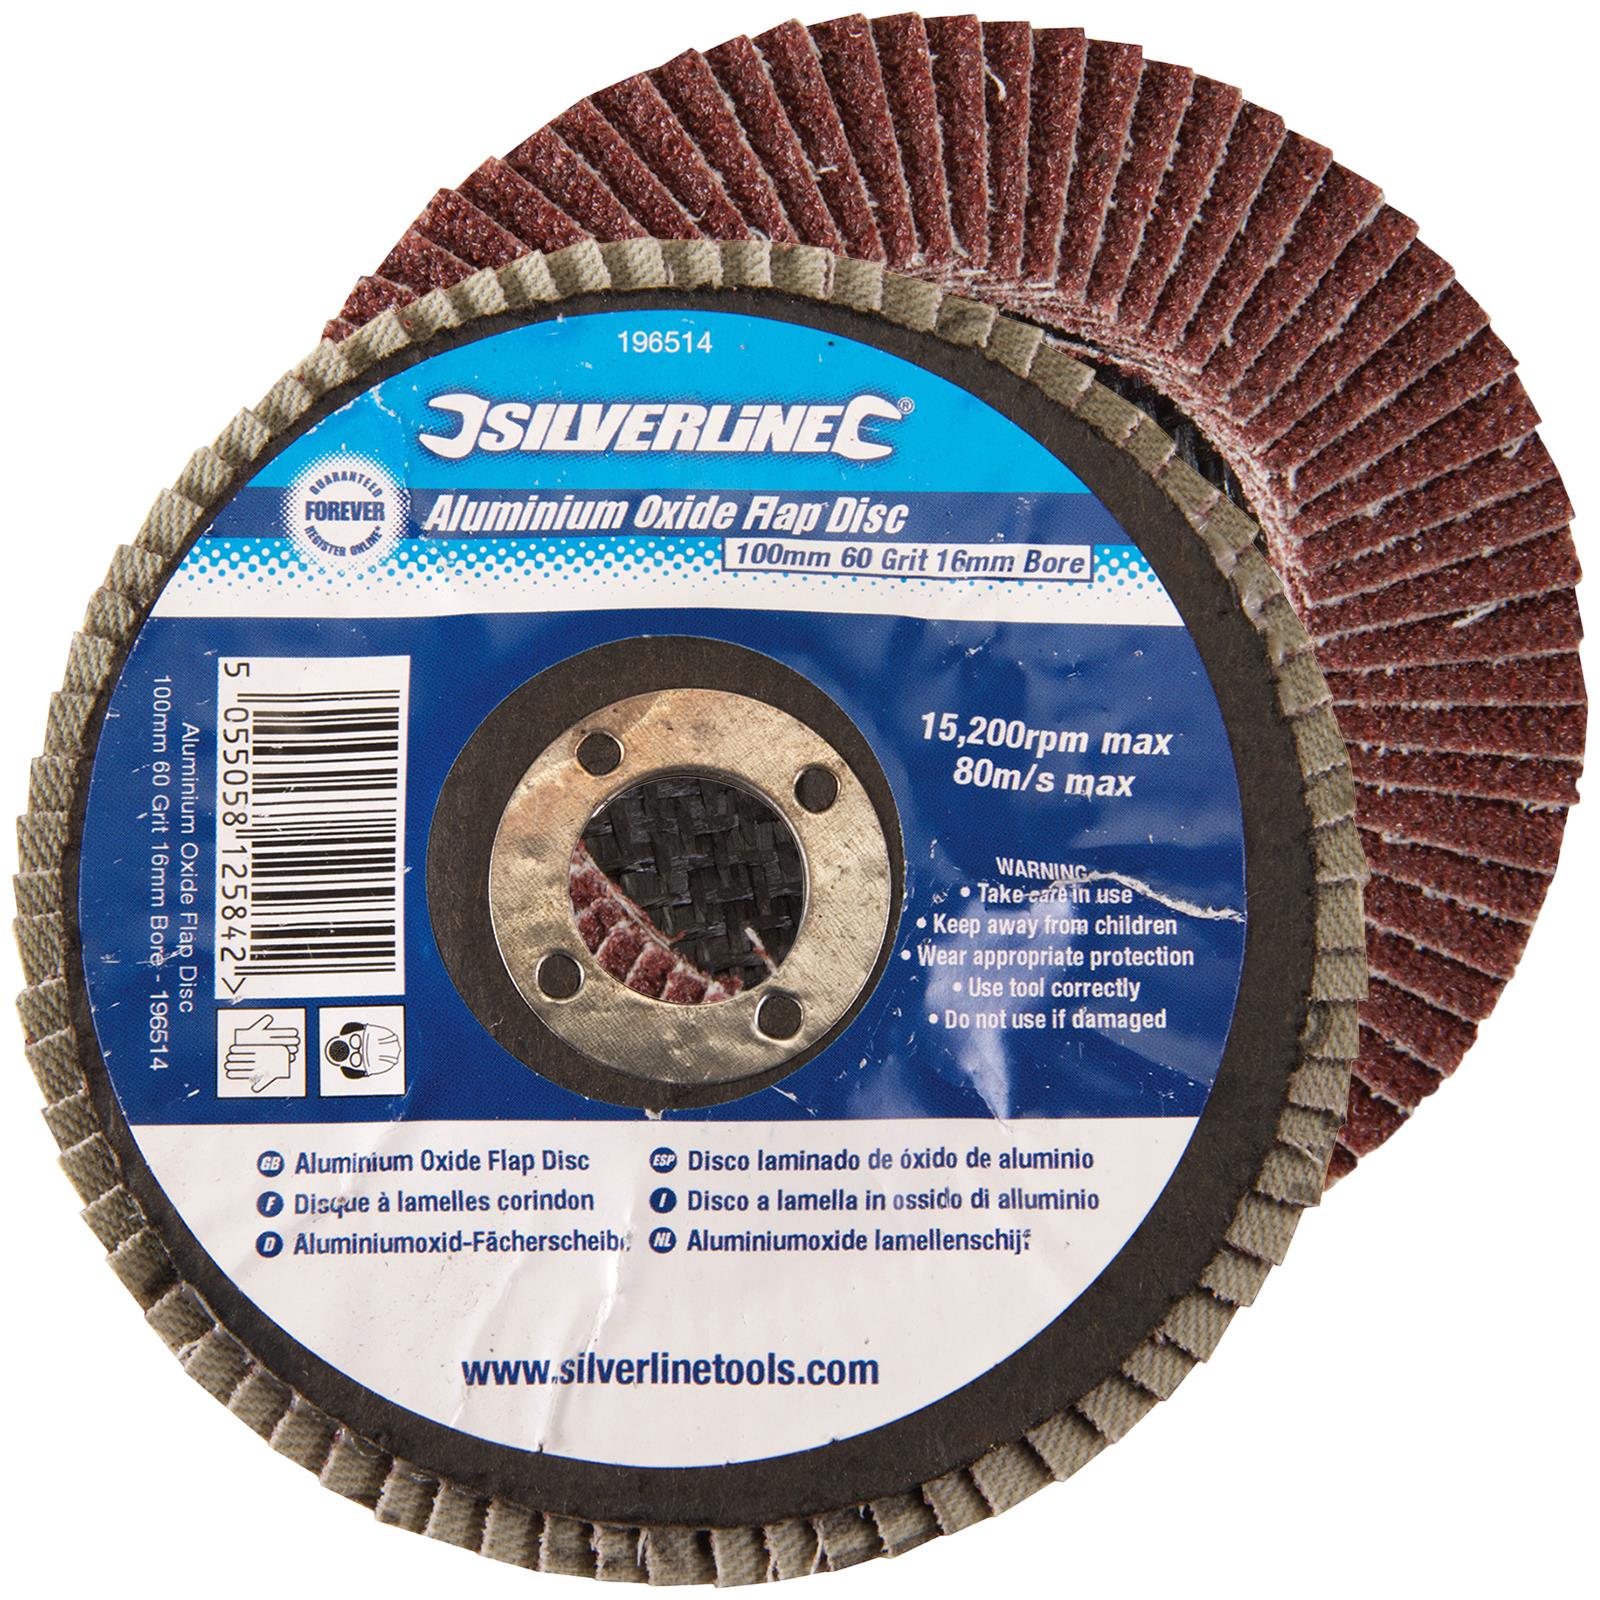 Silverline Aluminium Oxide Flap Disc 60 Grit 100mm x 16mm Bore